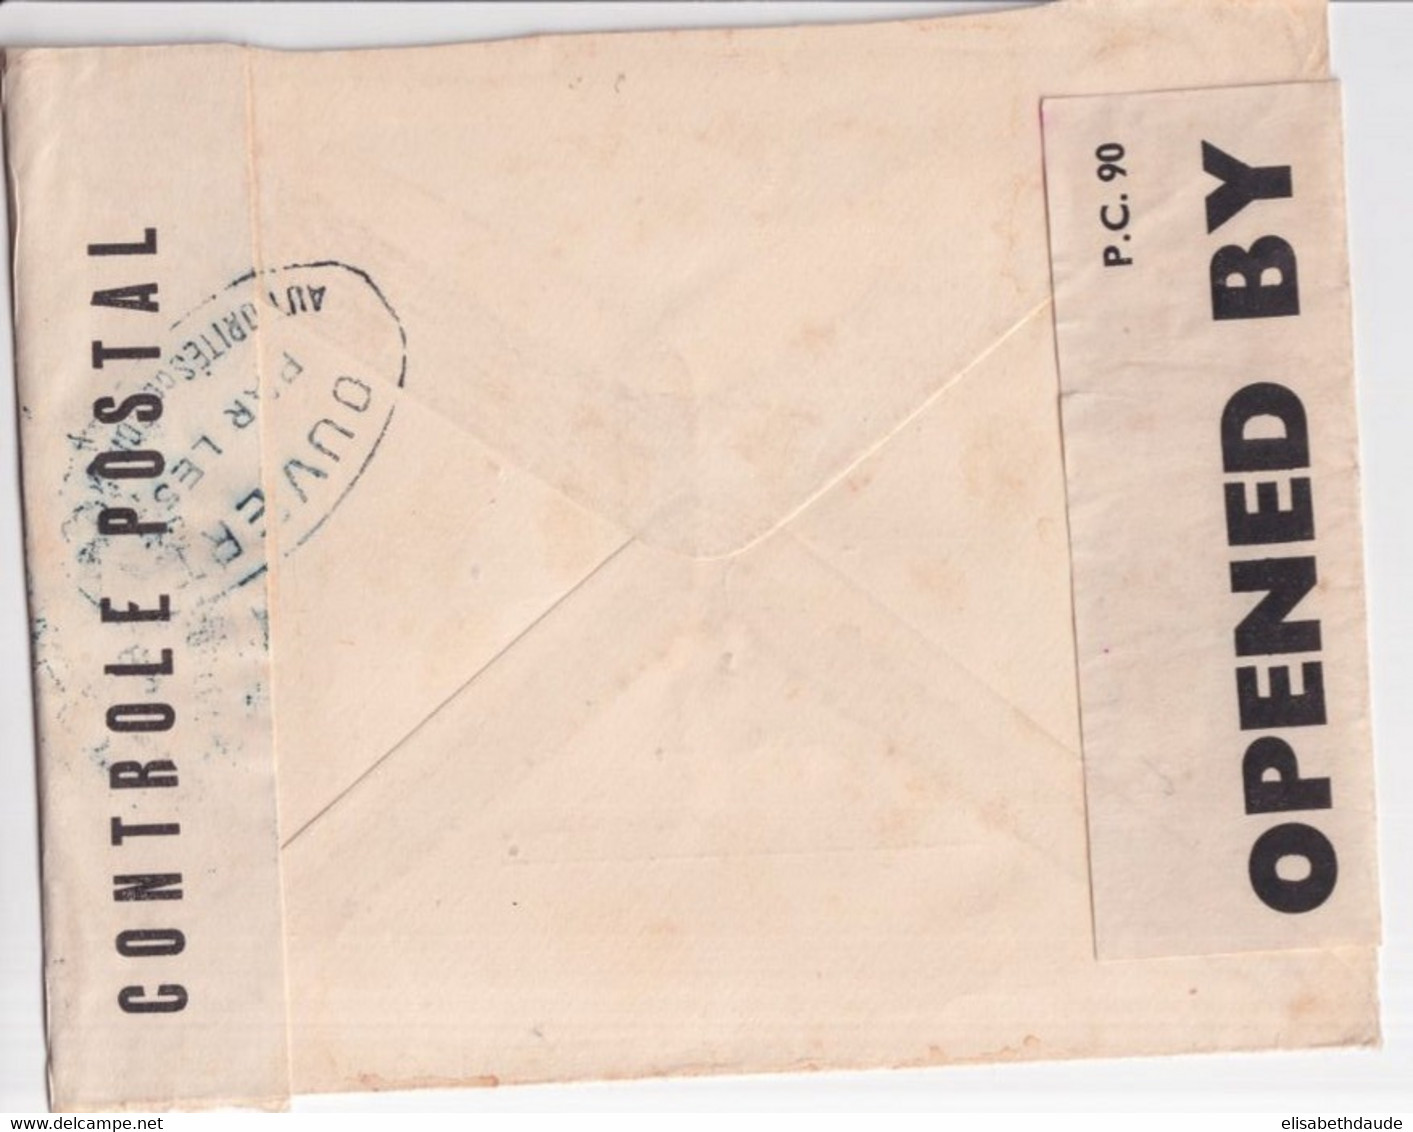 1943 - CROIX-ROUGE - ENVELOPPE DOUBLE CENSURE ! De LONDON => DAKAR (SENEGAL) ! - Red Cross